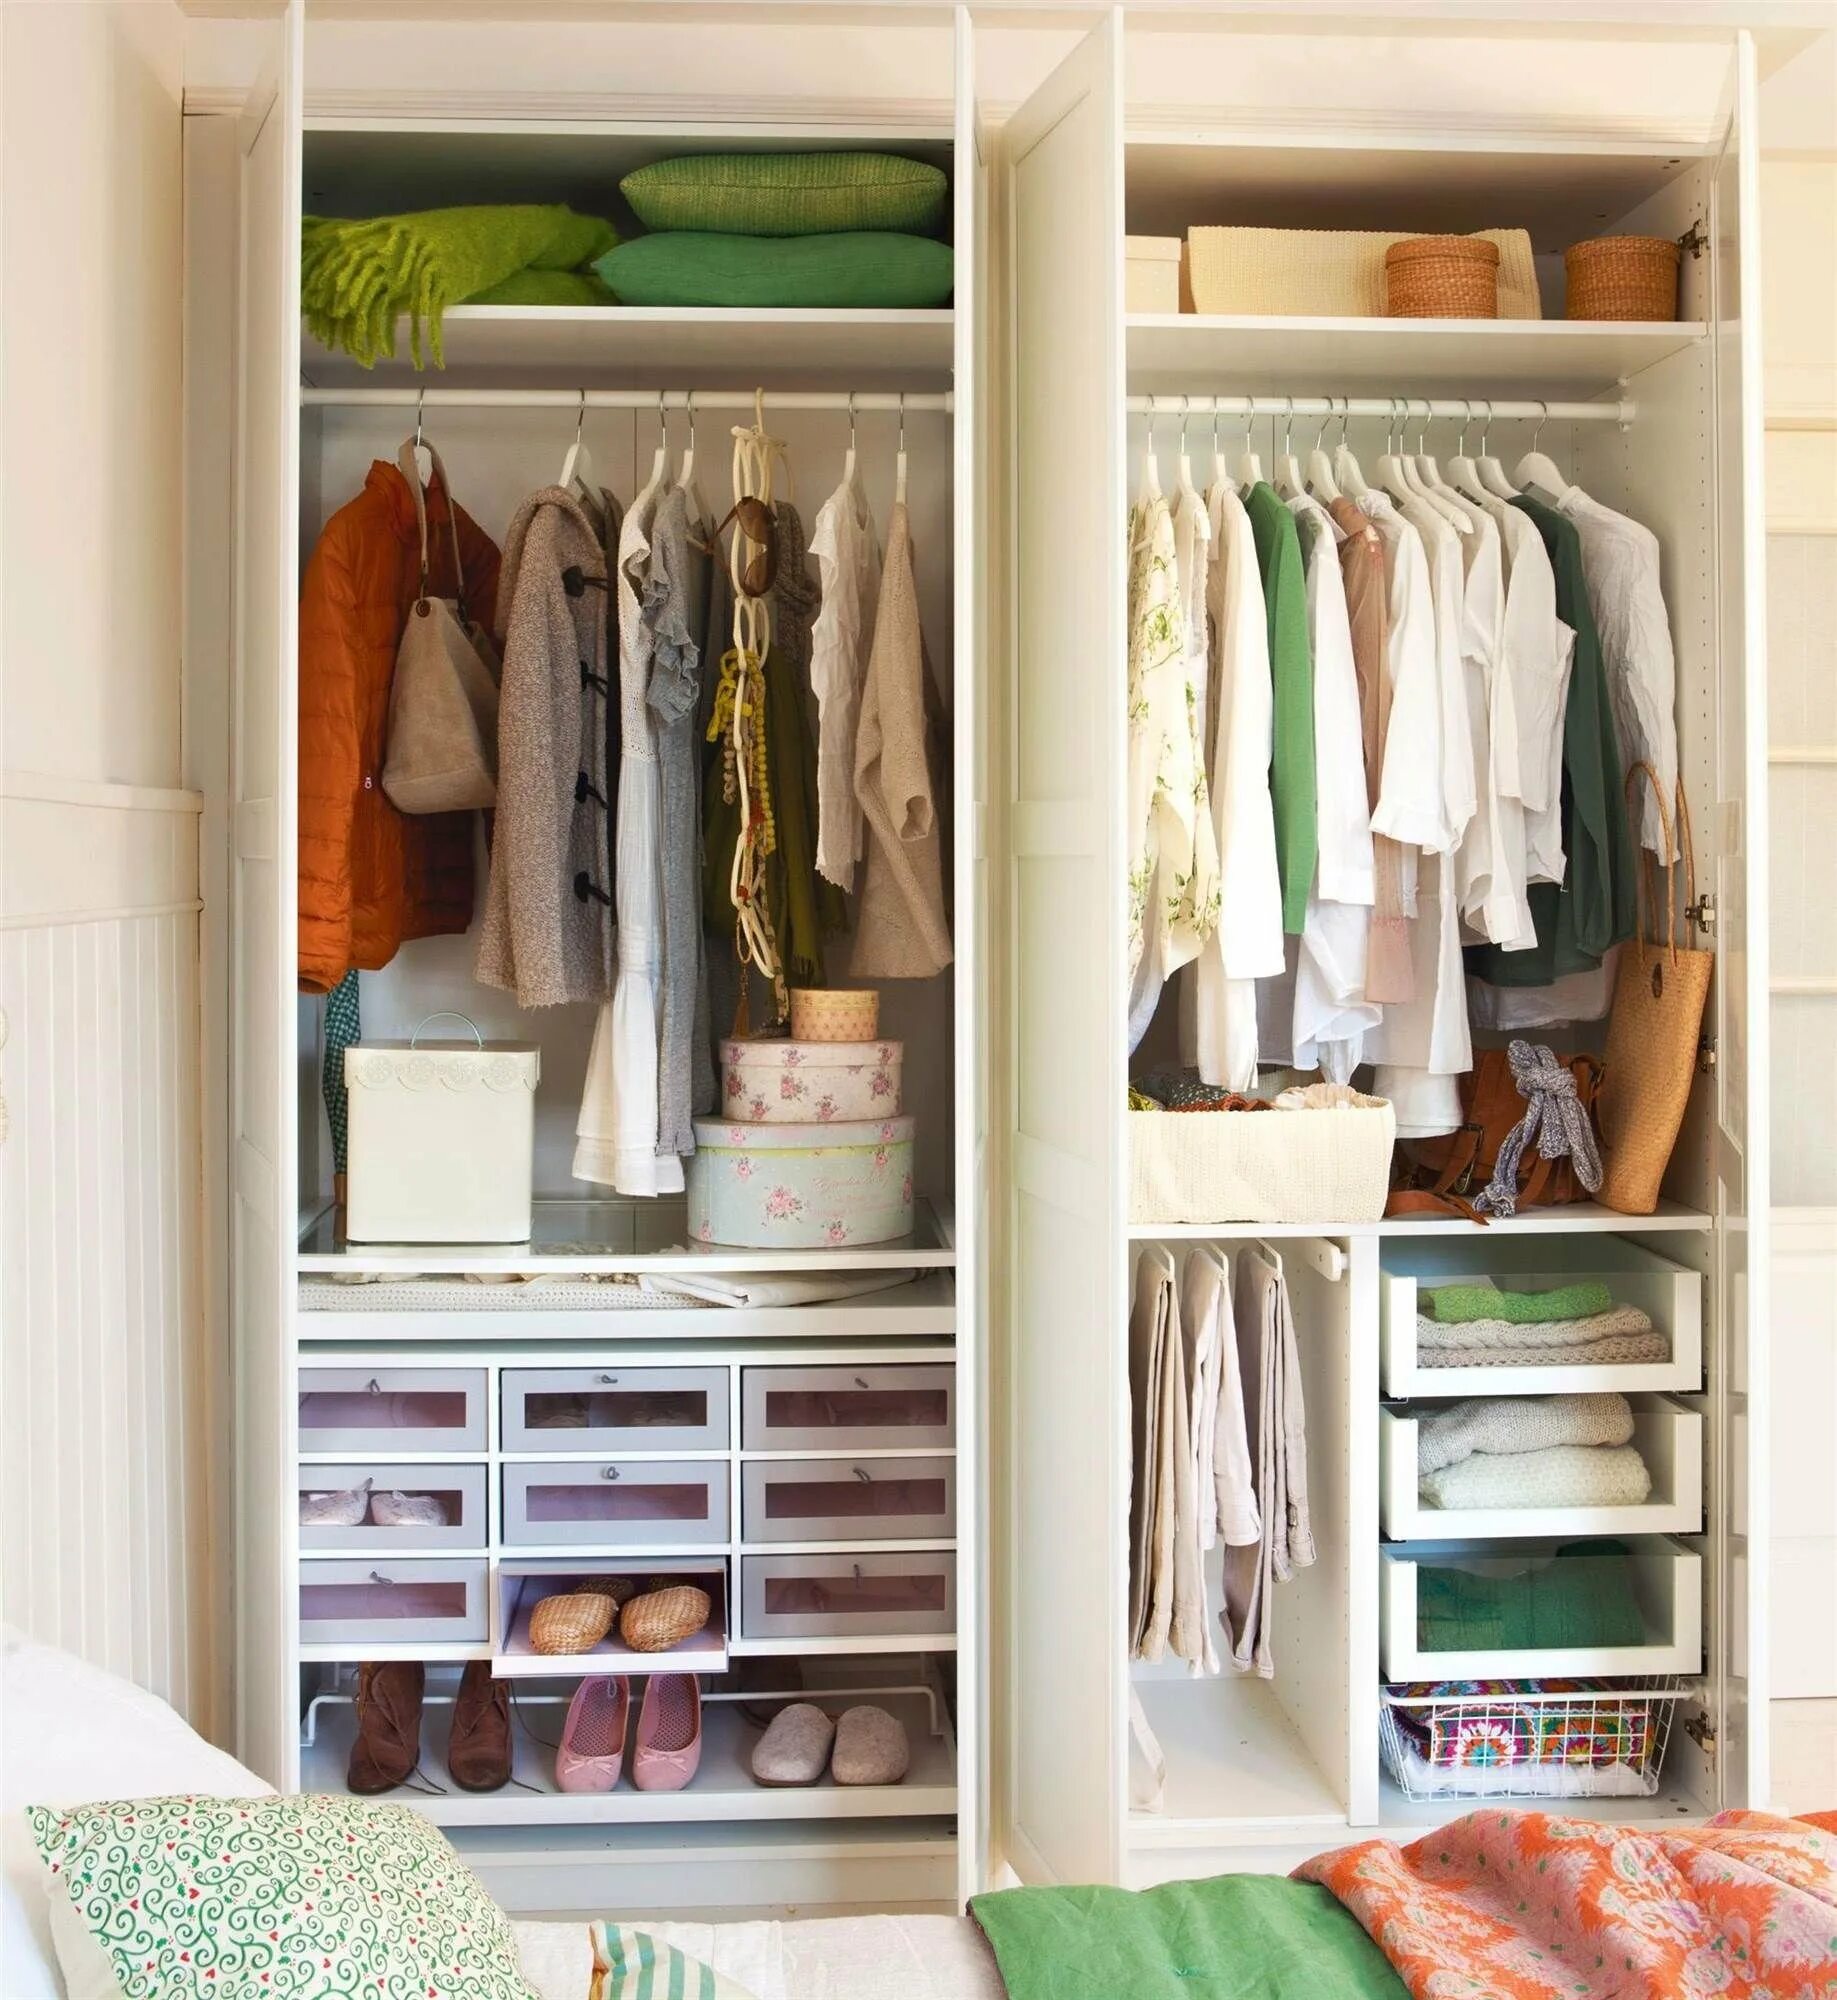 Удобный шкаф. Удобный шкаф для одежды. Шкаф удобный и вместительный. Хранение вещей в шкафу. Удобно аккуратный